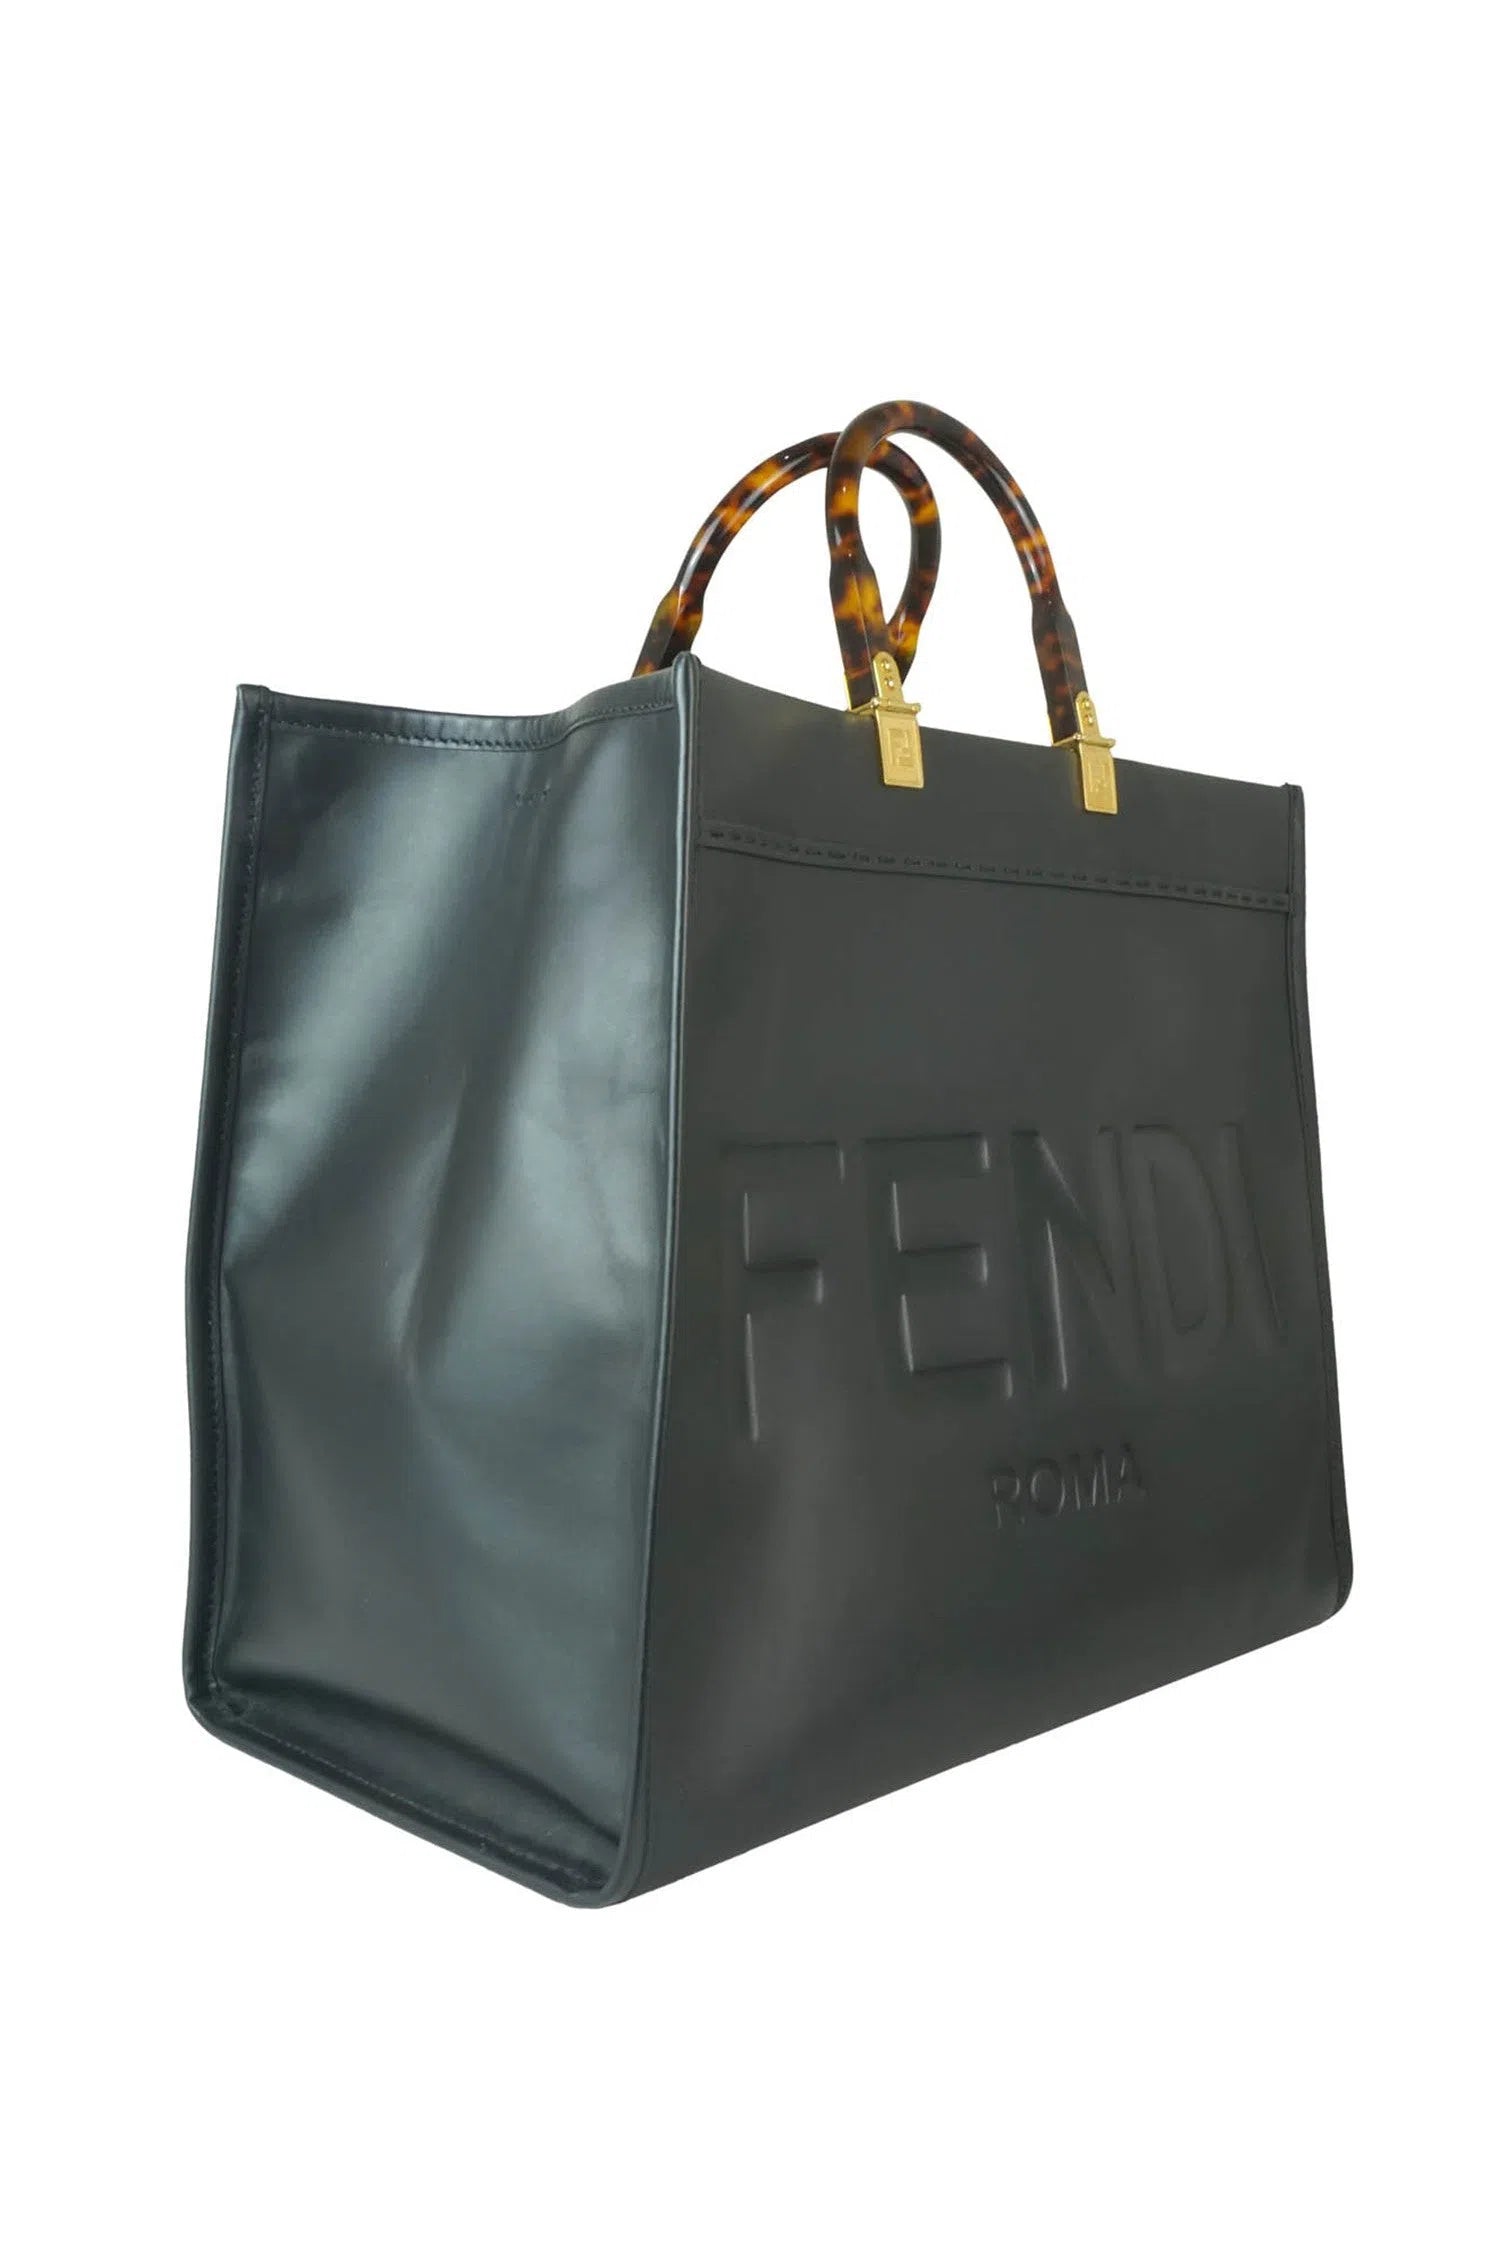 Fendi Large Sunshine Shopper Tote Bag - Foxy Couture Carmel